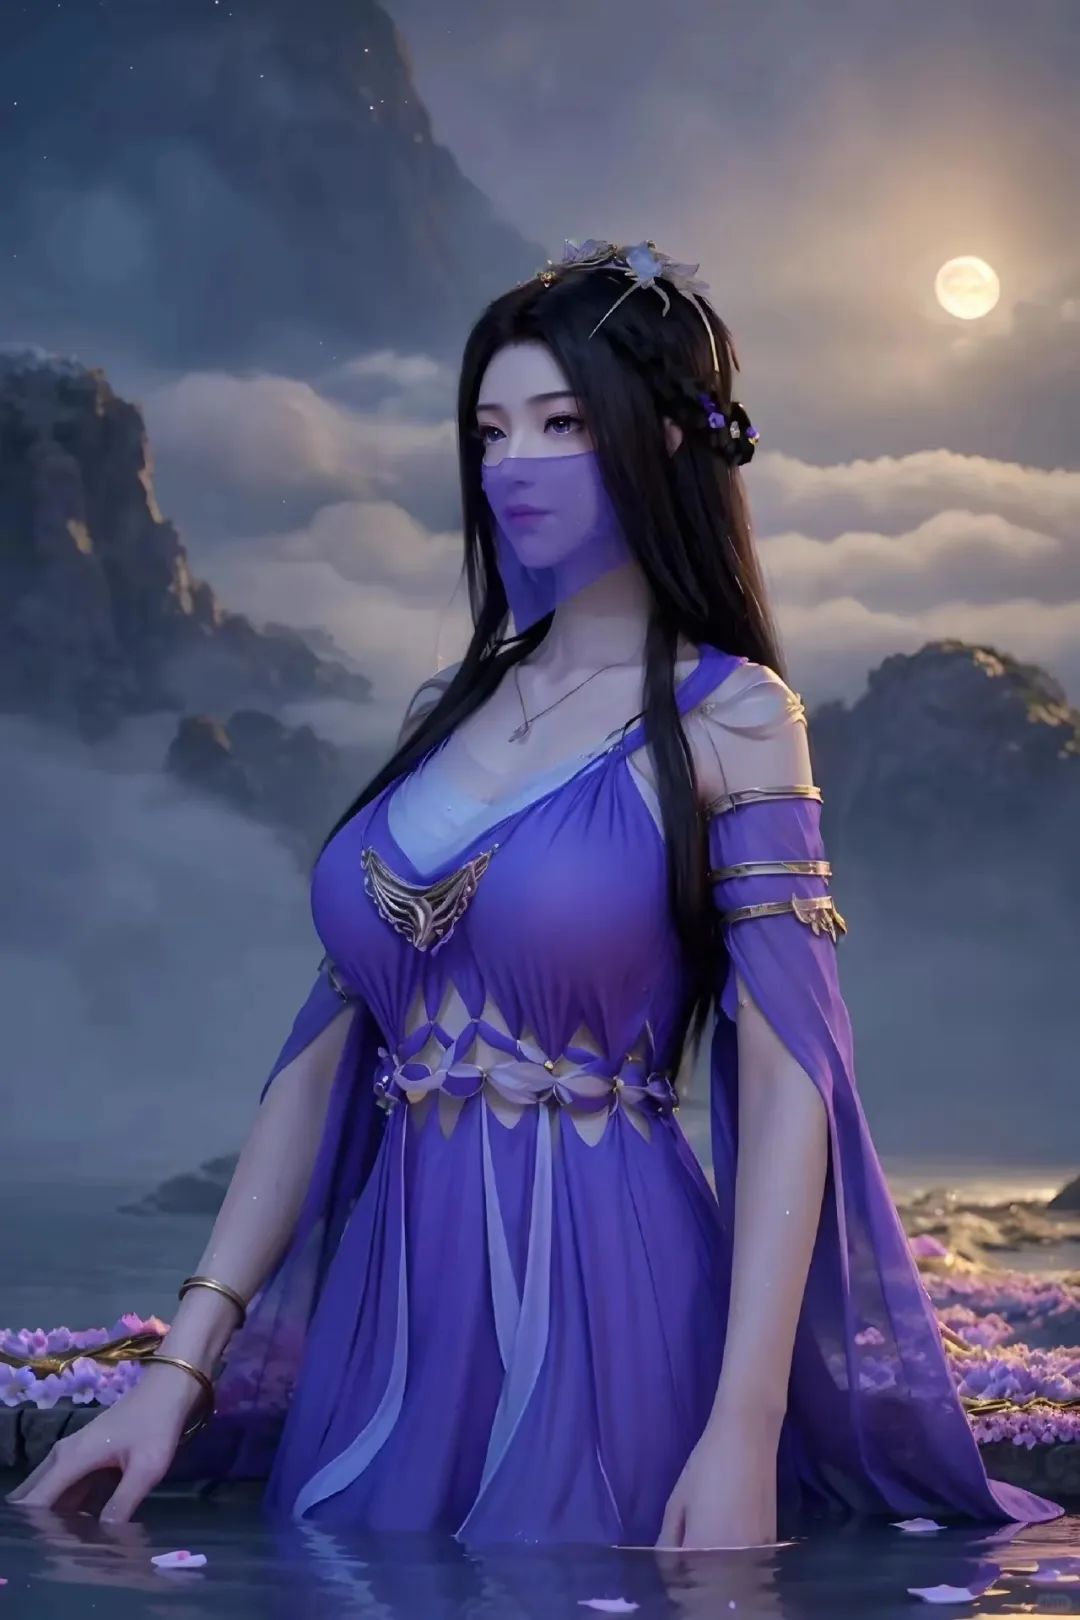 凡人修仙传:紫灵的时尚穿搭秀!新中式旗袍vs制服穿搭